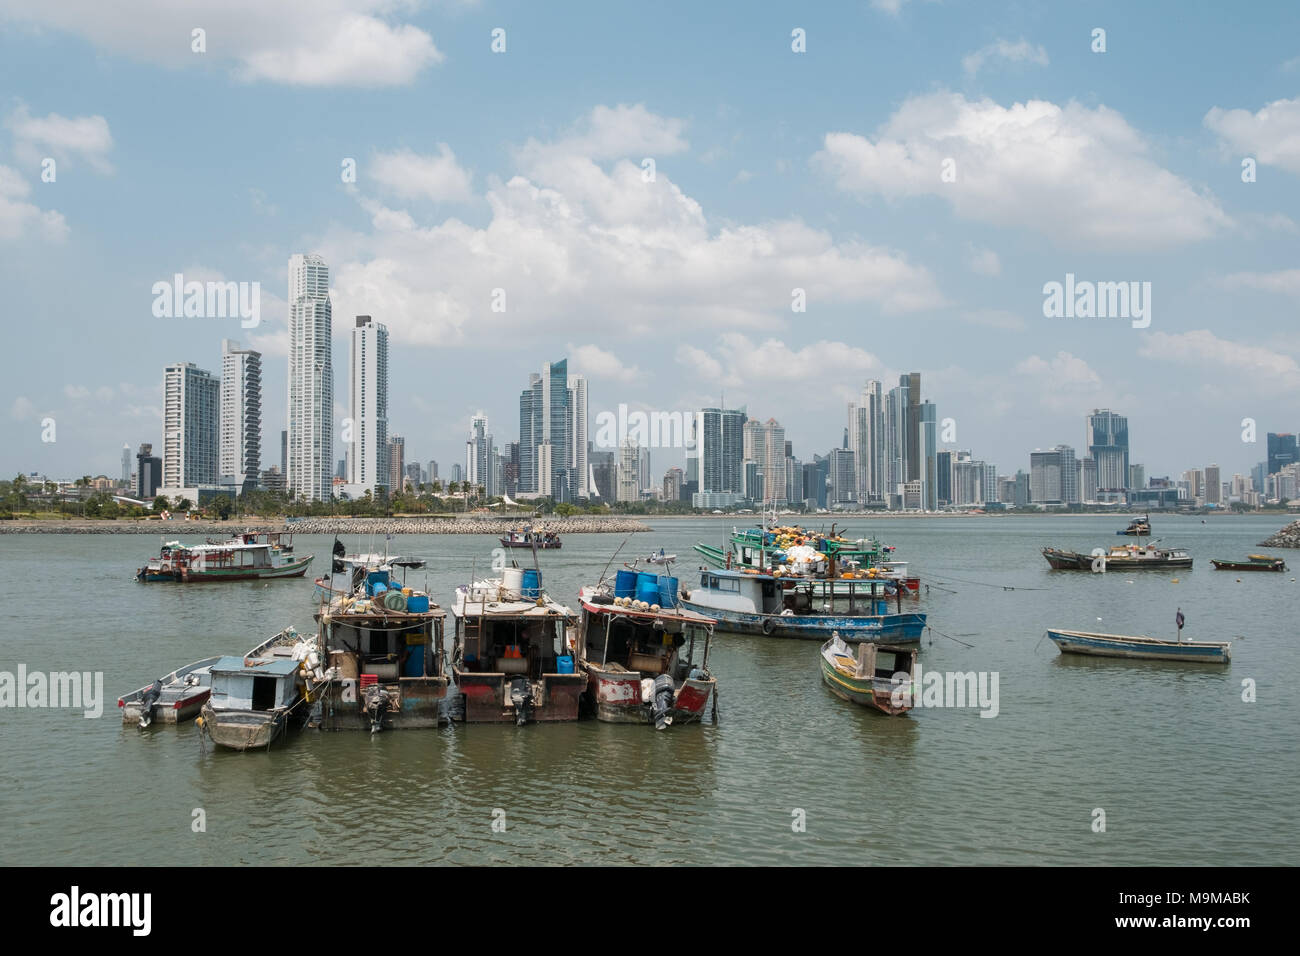 Panama City, Panama - März 2018: Boote in der Nähe von Fischmarkt und Wolkenkratzer Skyline, Küste von Panama City, Panama Stockfoto